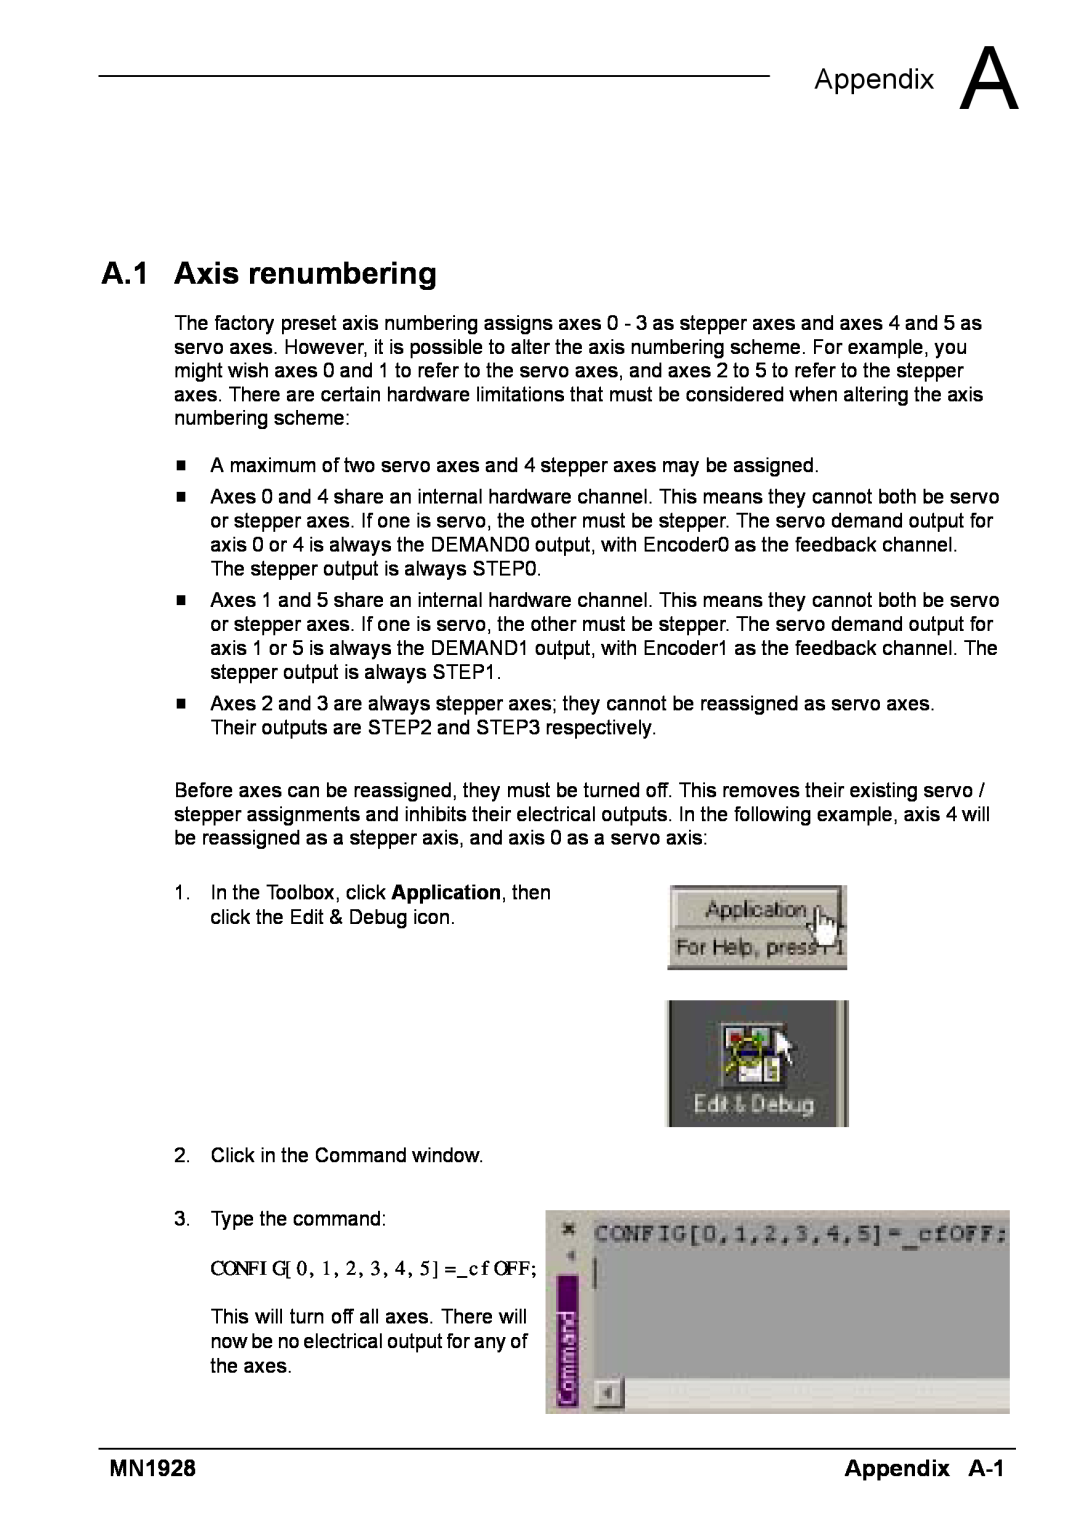 Baldor MN1928 installation manual A.1 Axis renumbering, A Appendix A, Appendix A-1 